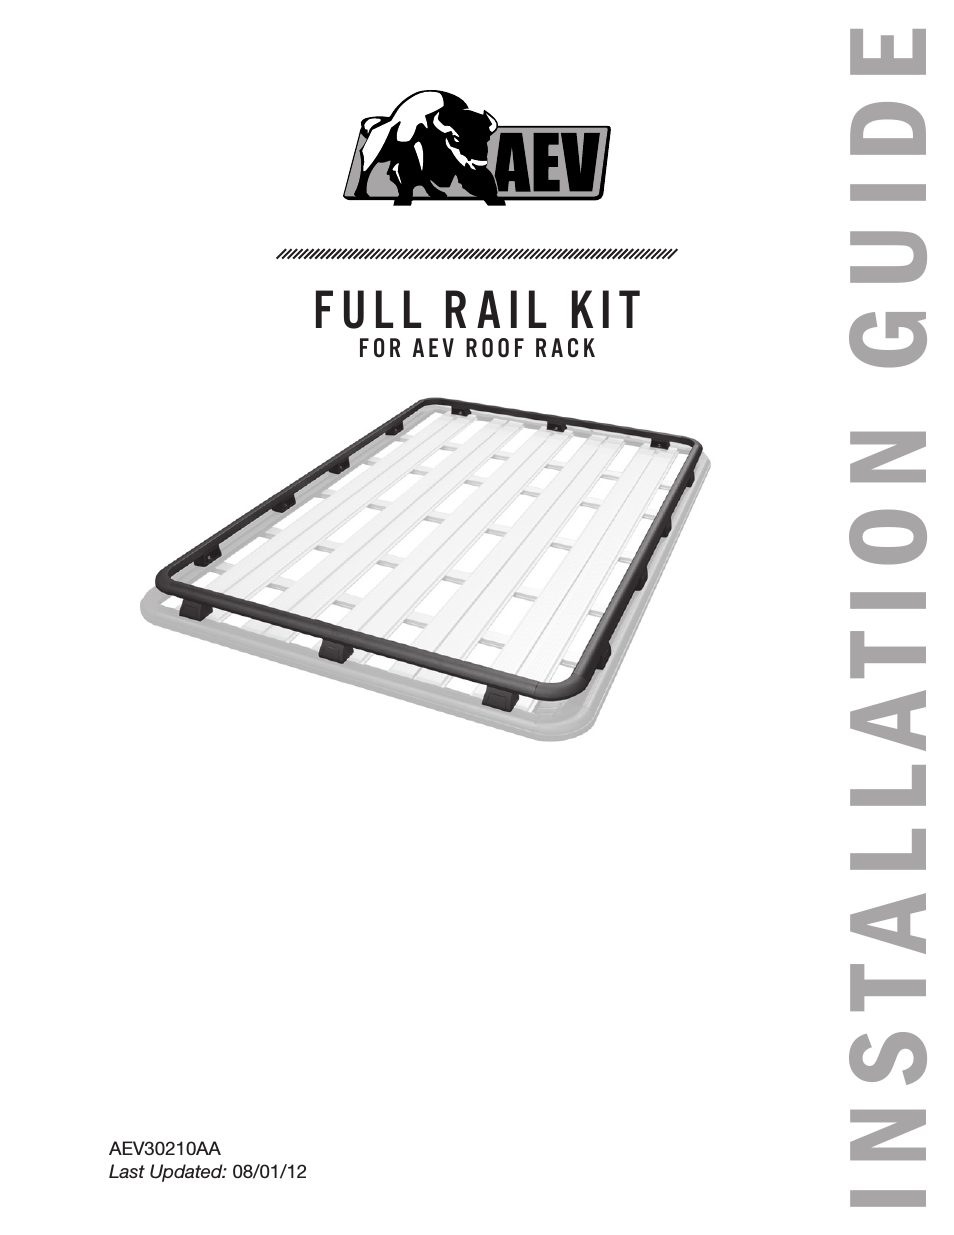 Full Rail Kit for JK Roof Rack